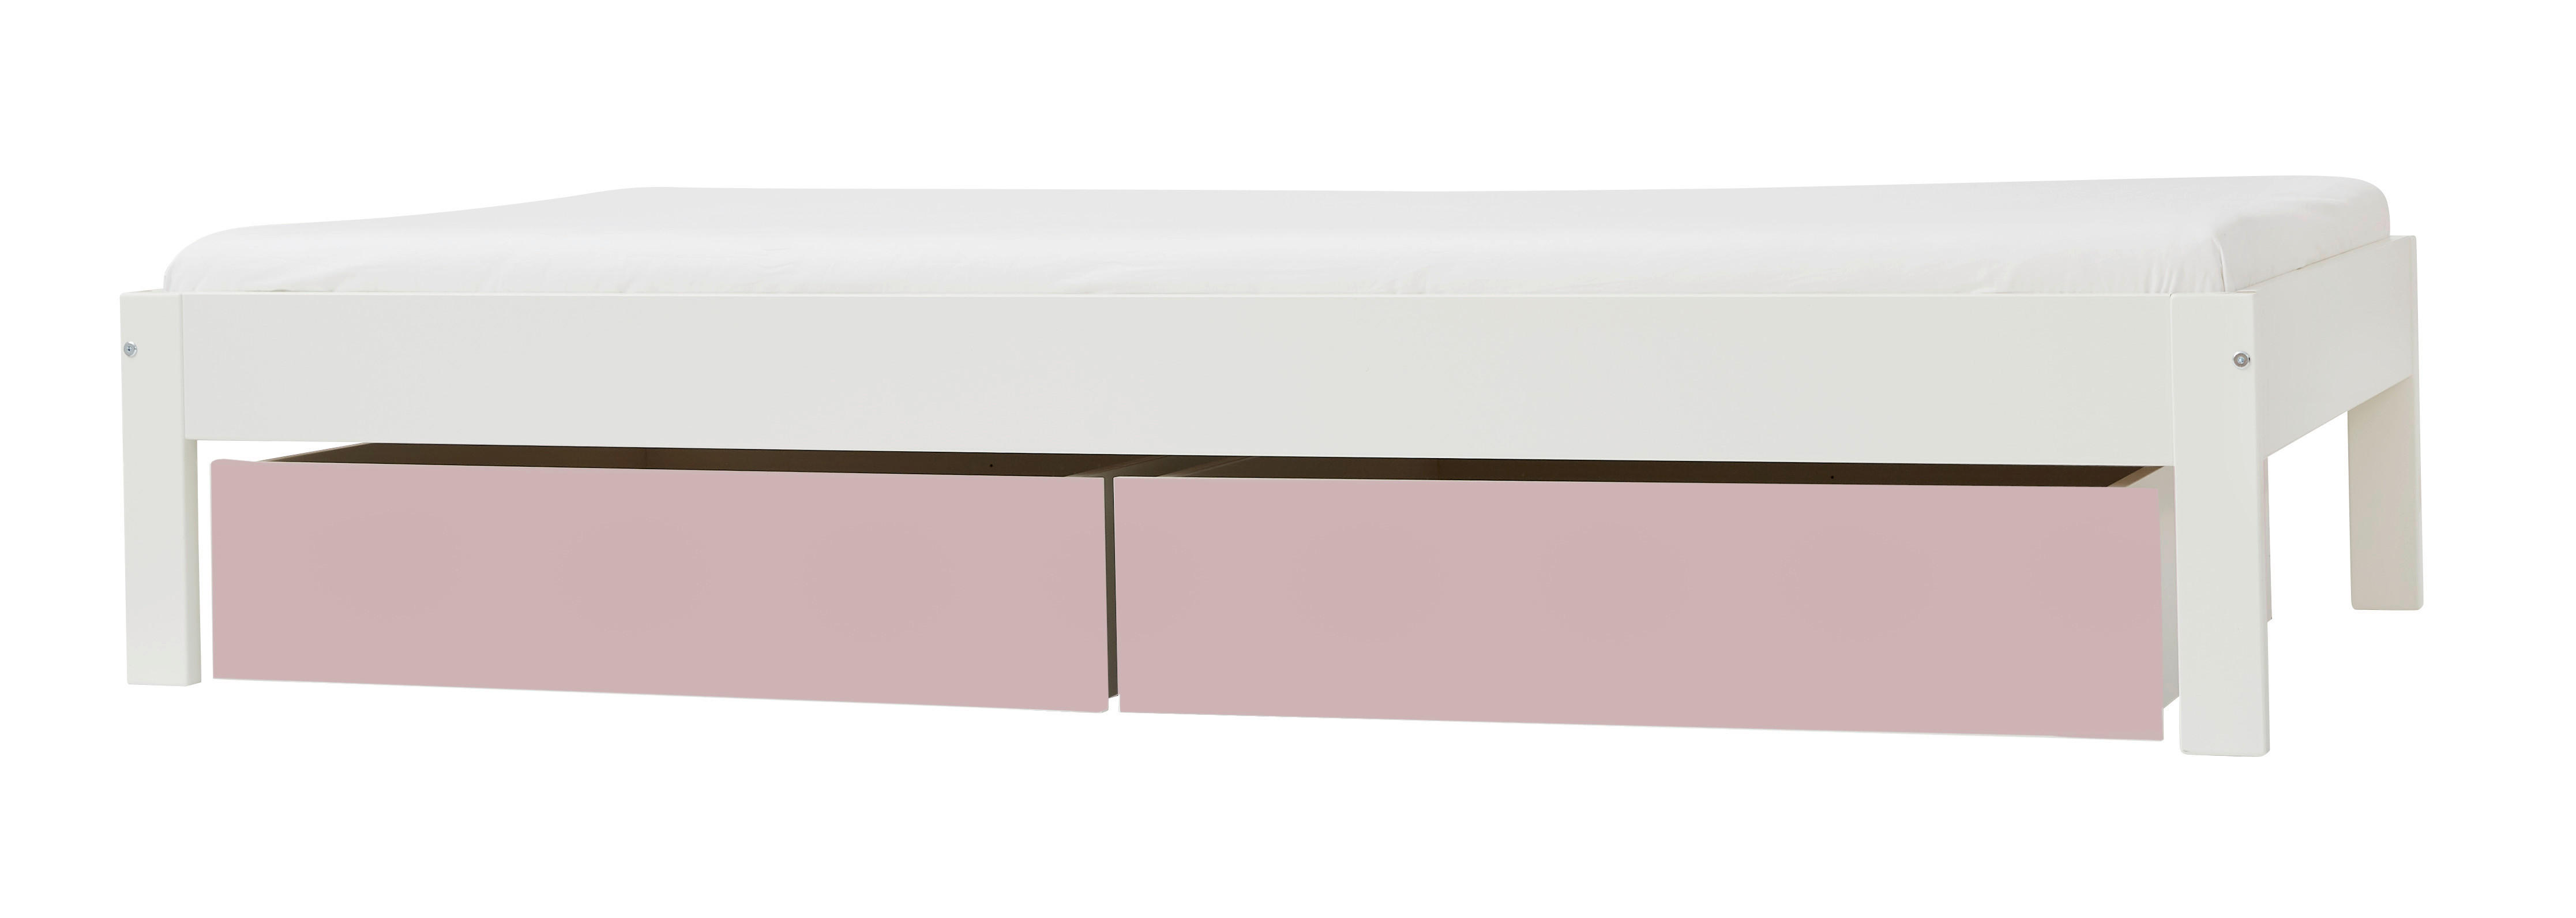 BETT 90/200 cm  in Rosa, Weiß  - Rosa/Weiß, Design, Holzwerkstoff (90/200cm) - Ben'n'jen